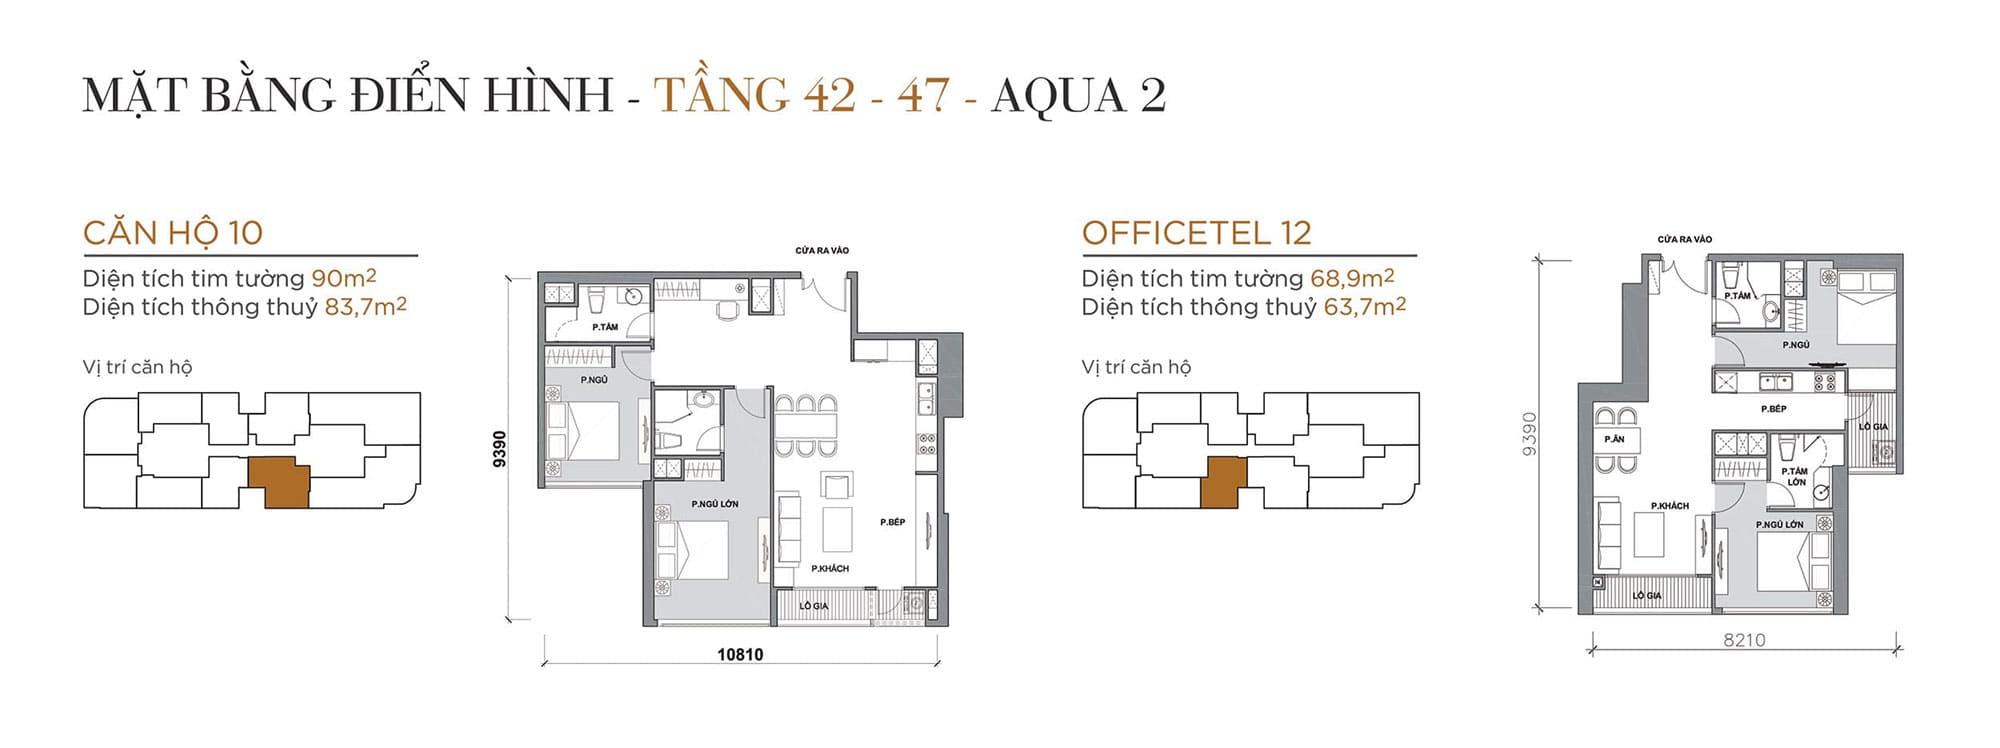 Layout căn hộ tầng 42 đến tầng 47 tòa Aqua 2 loại Căn hộ 10, Officetel 12.